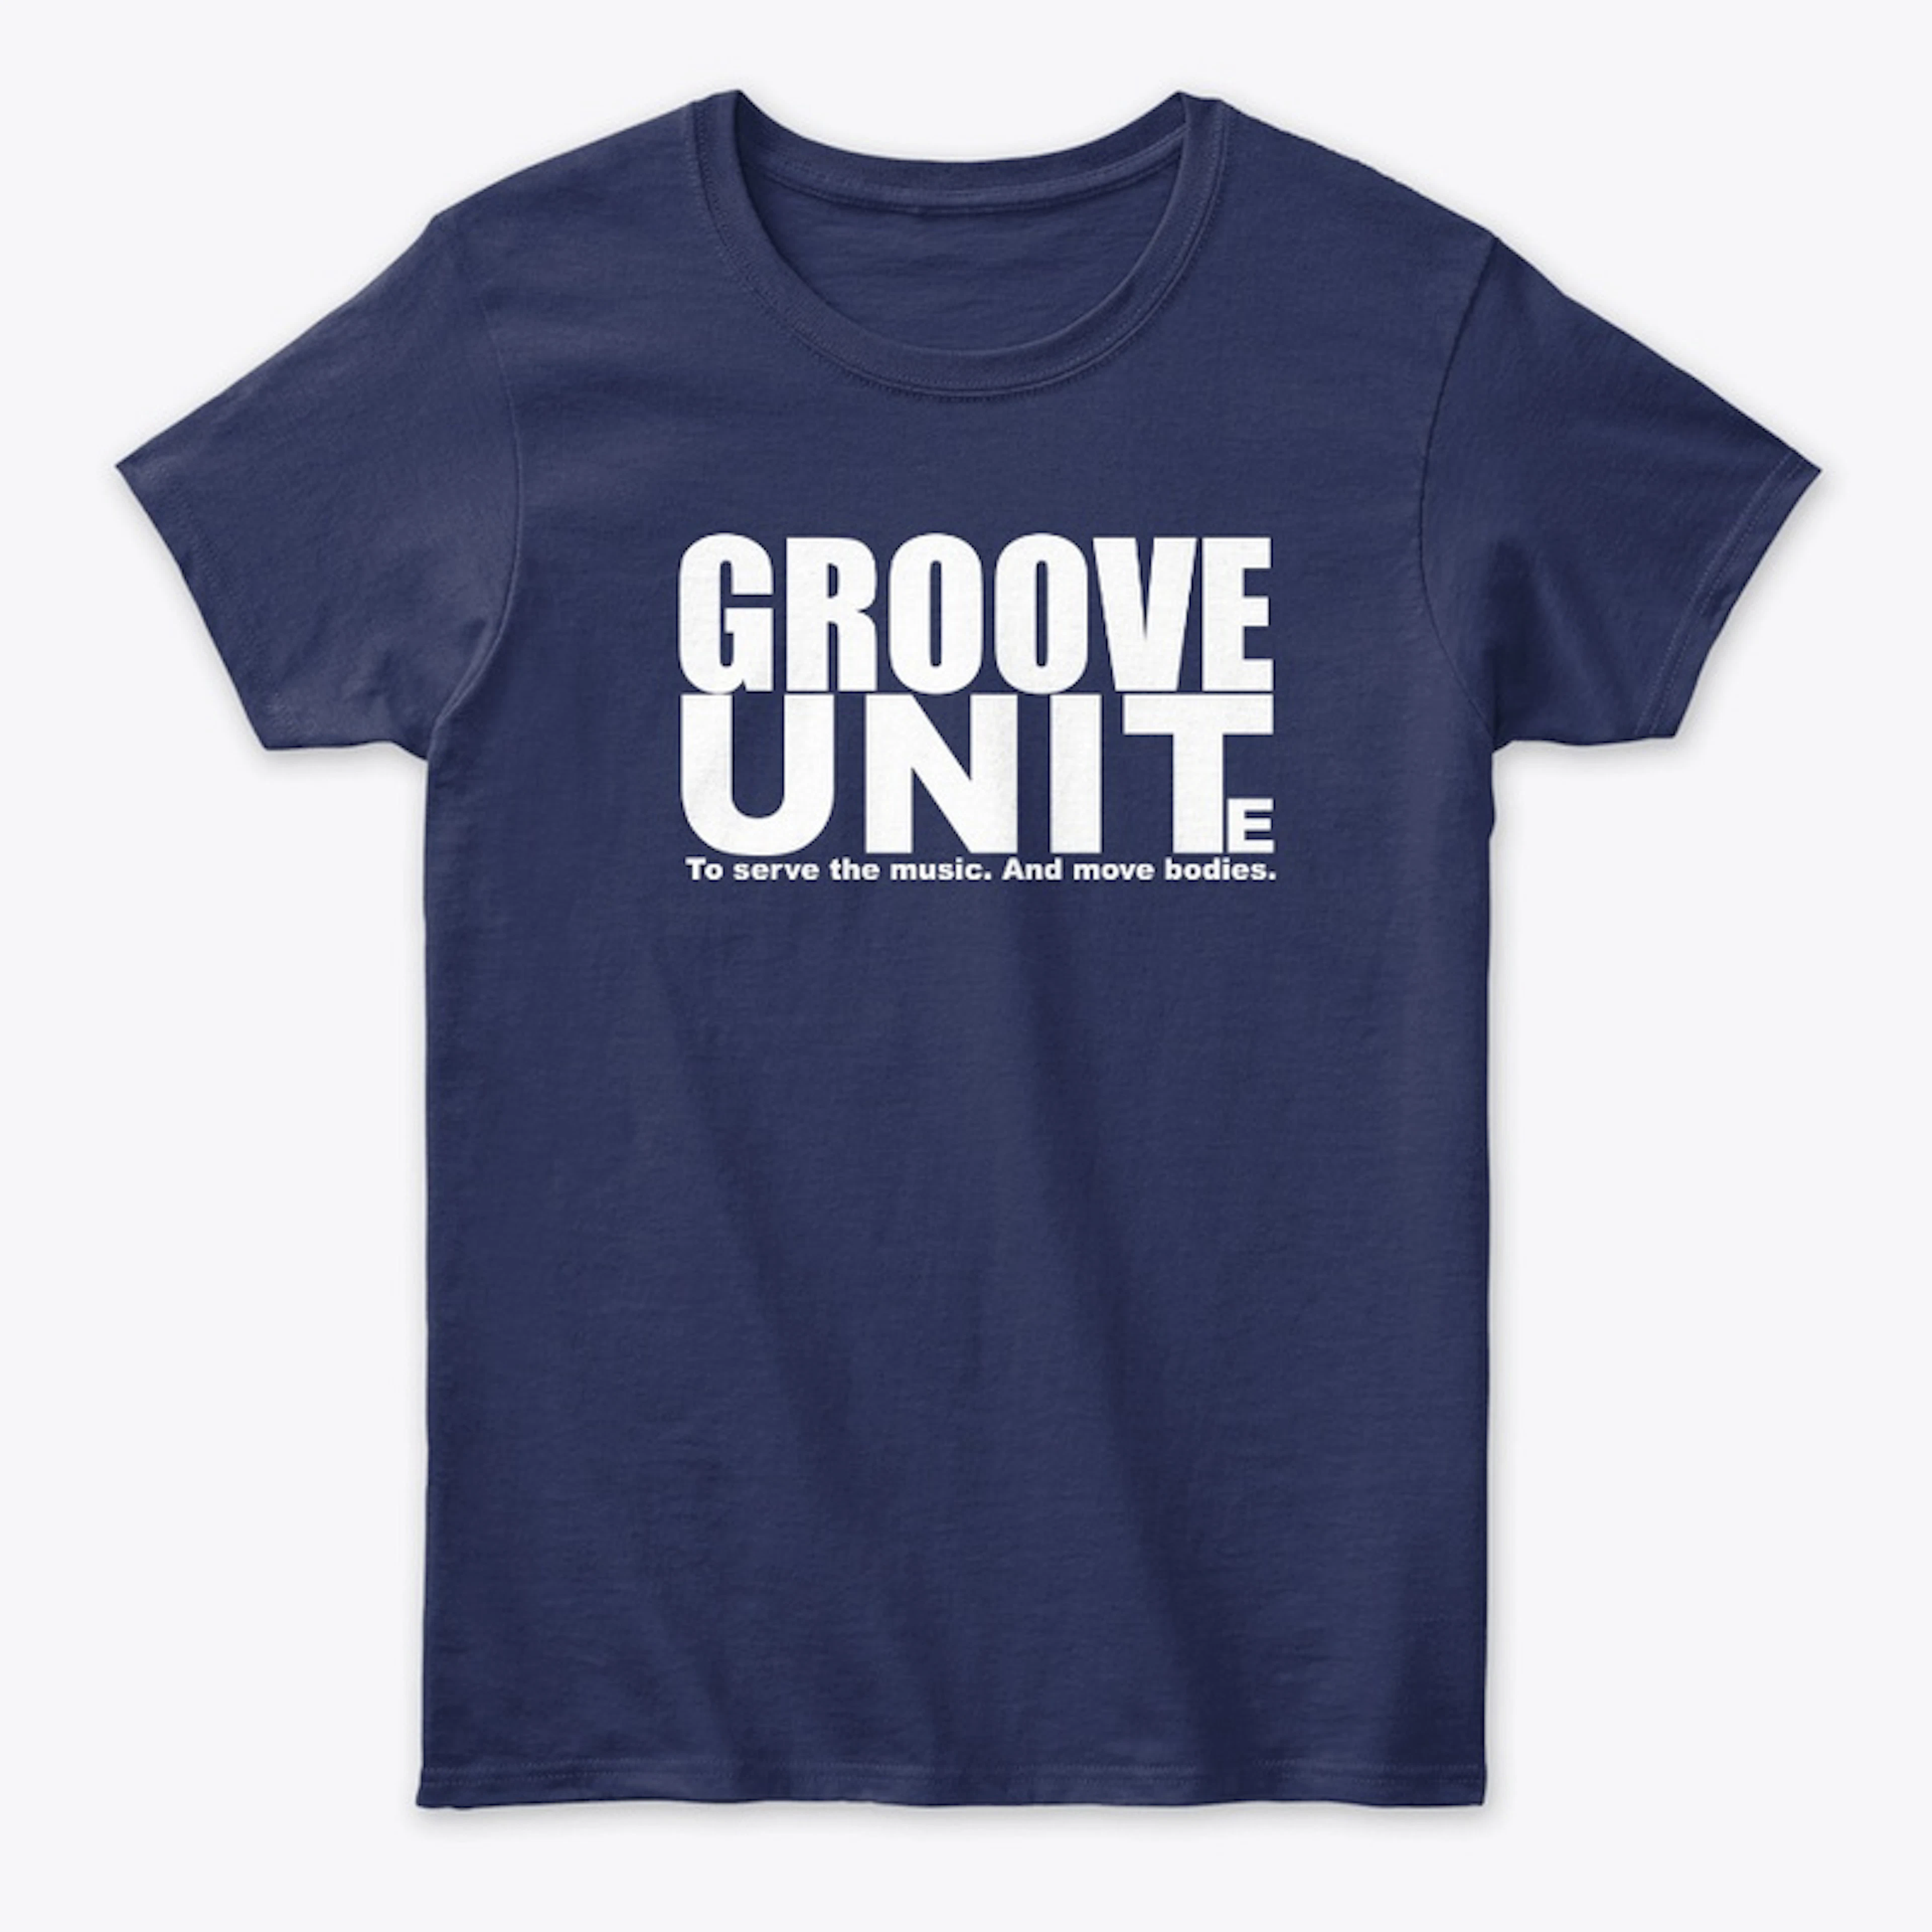 'GROOVE UNITe' Tees / Hoodies